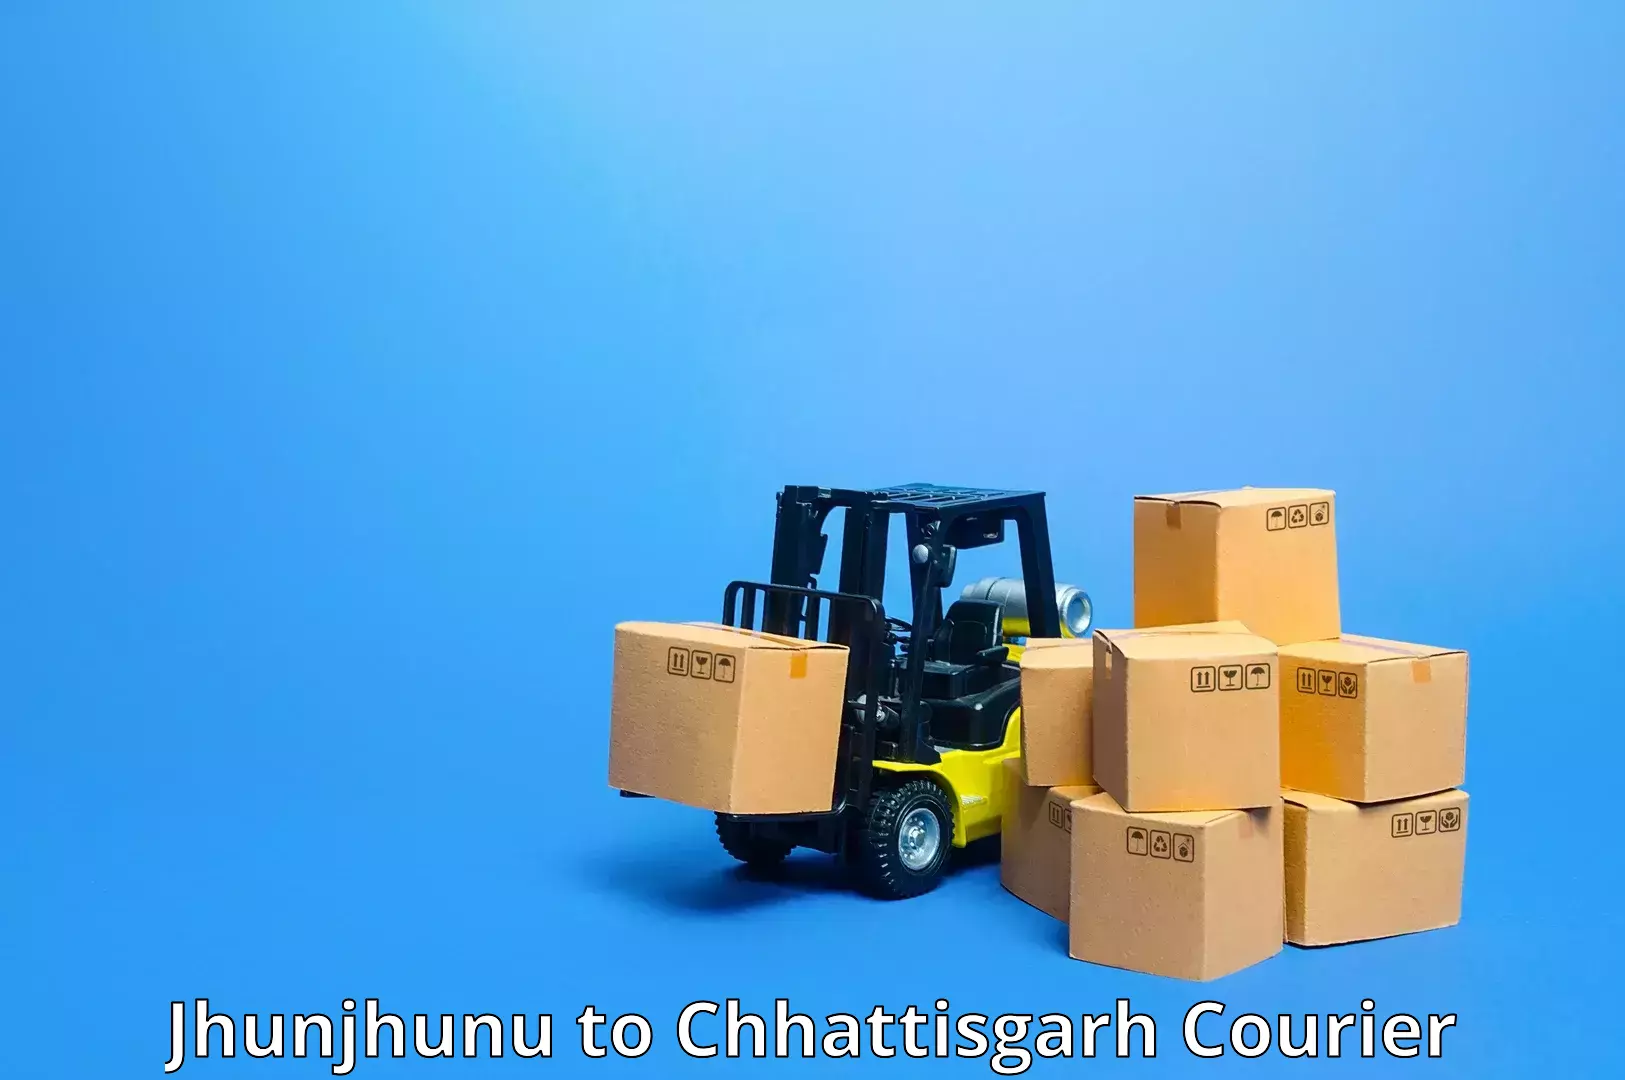 Small parcel delivery in Jhunjhunu to Patna Chhattisgarh